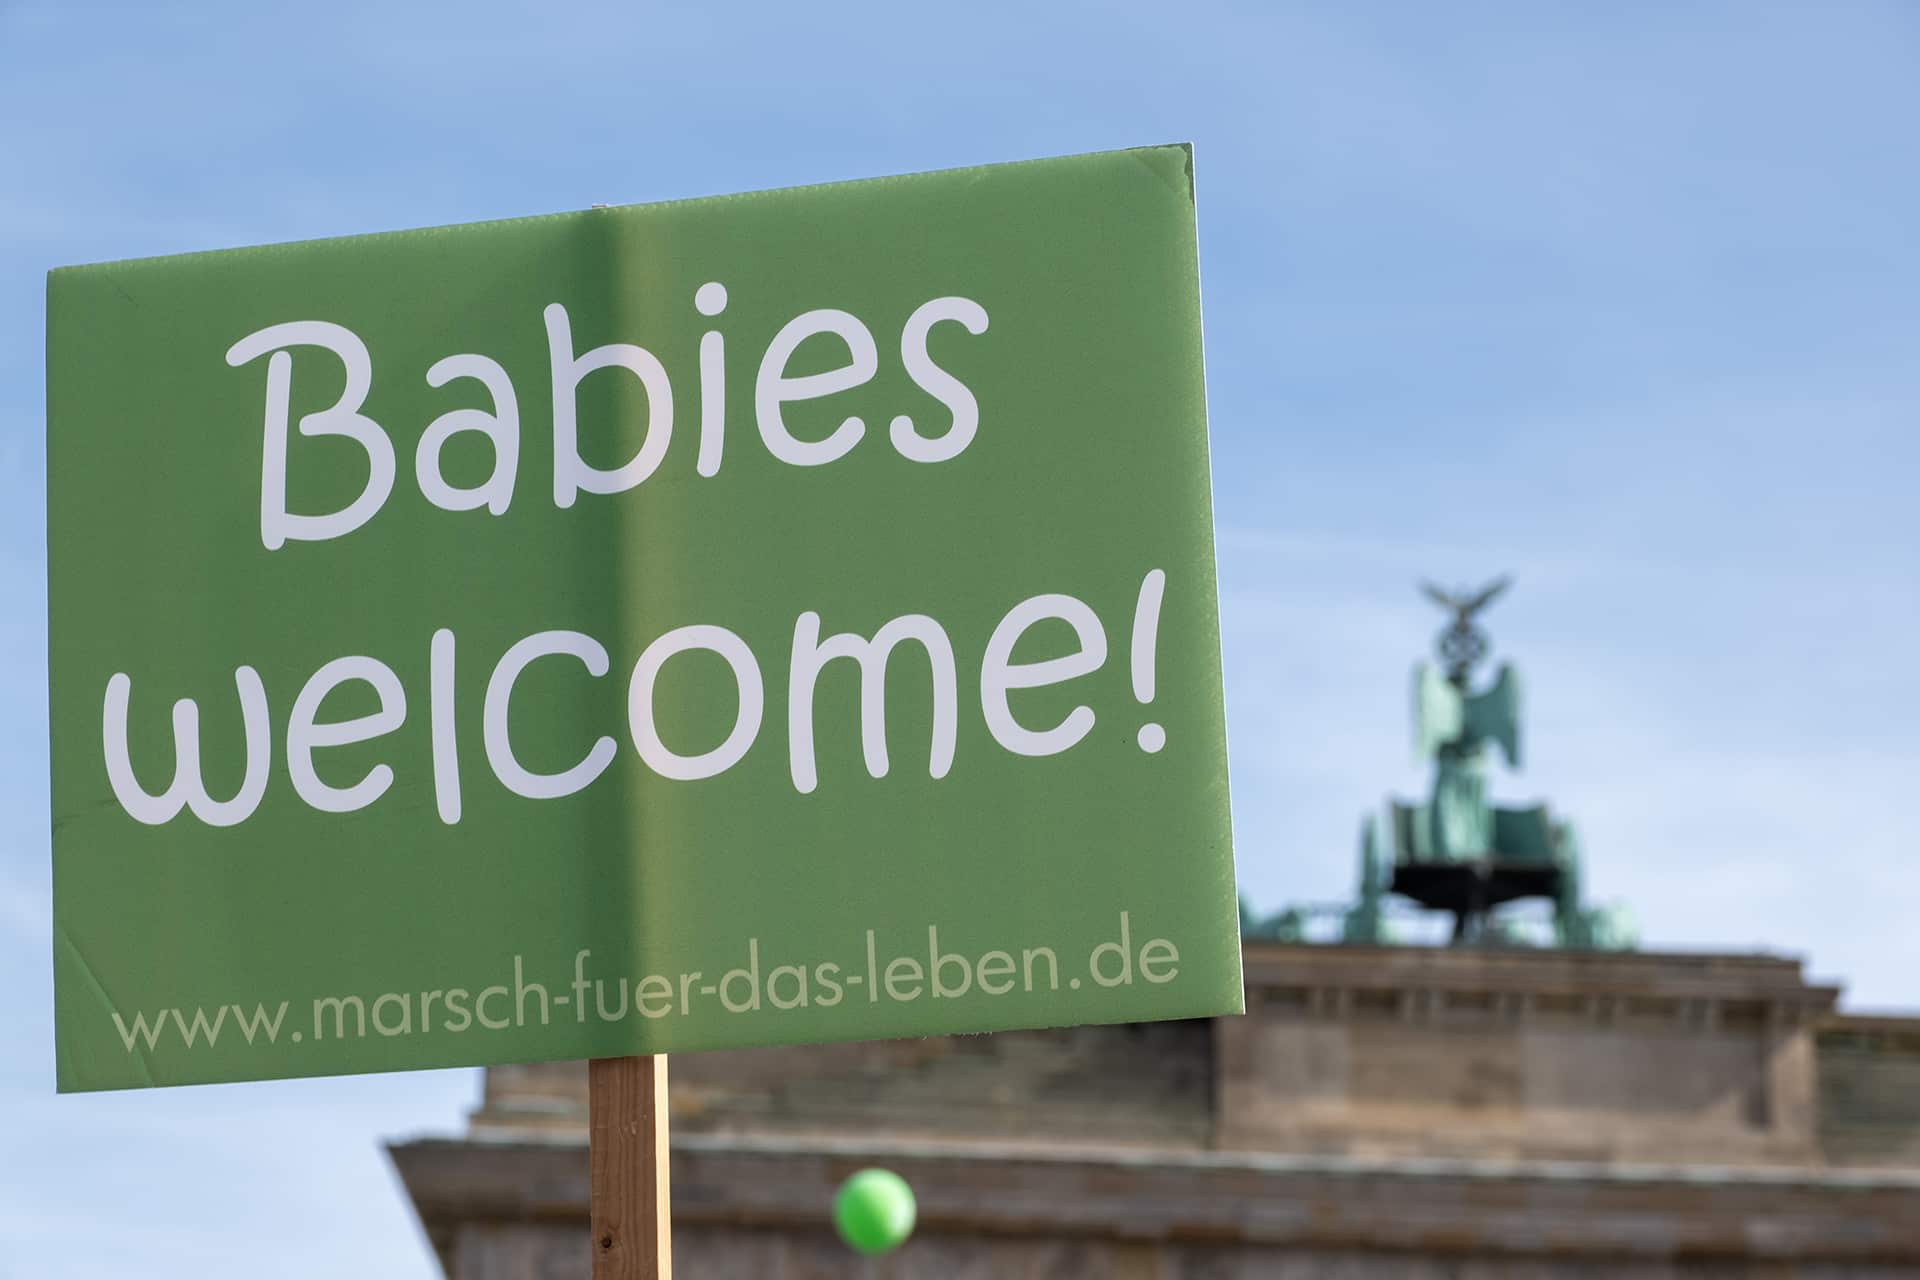 Marsch für das Leben 2020 in Berlin